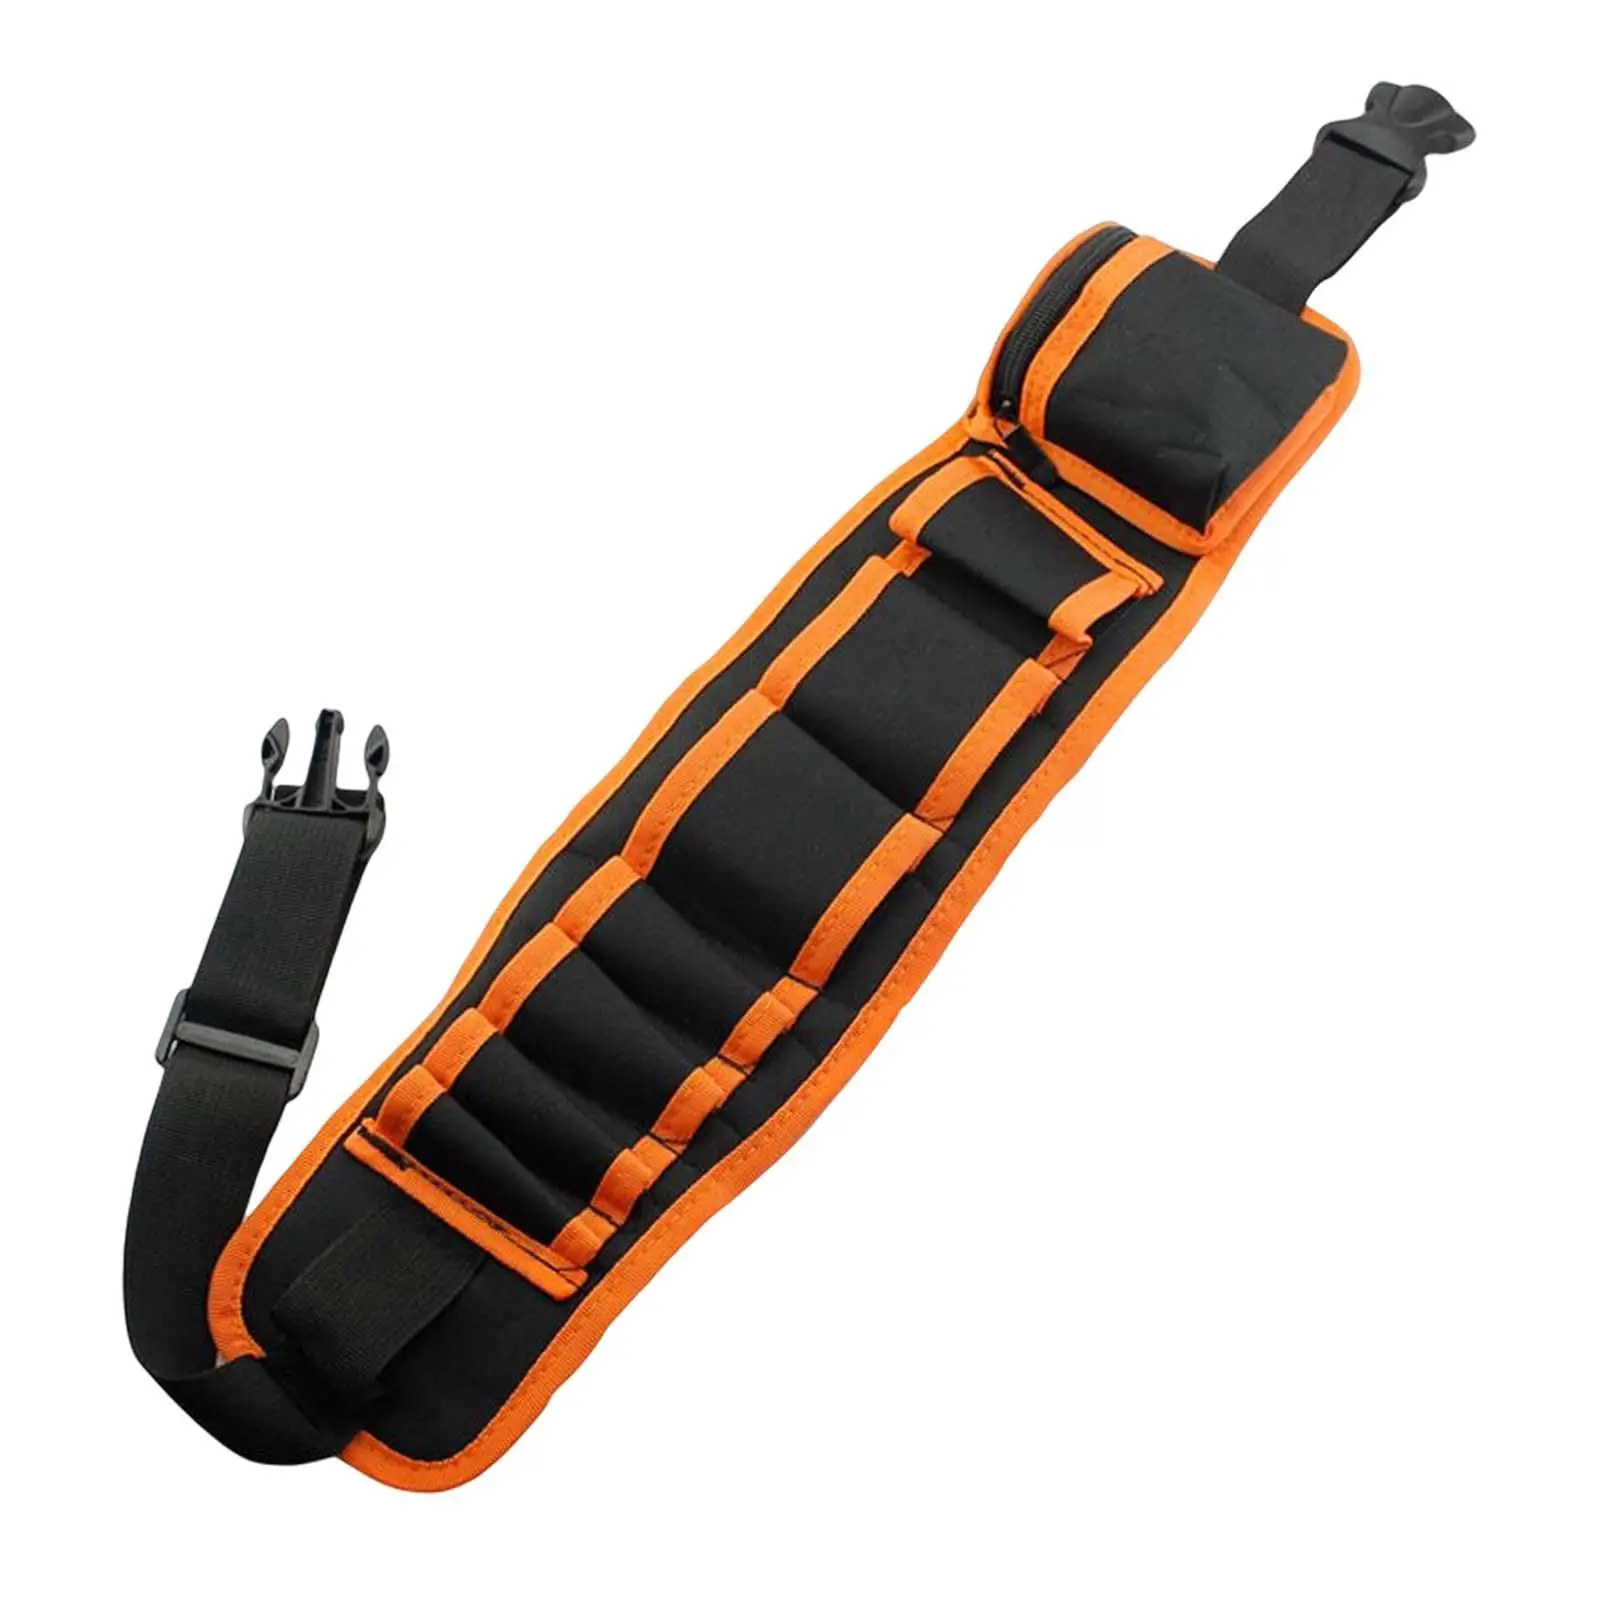 Portable Adjustable Tool Belt Bag Electrician Storage Belt Bag Hardware Tool Pocket Gardening Tool Waist Bag for Workers